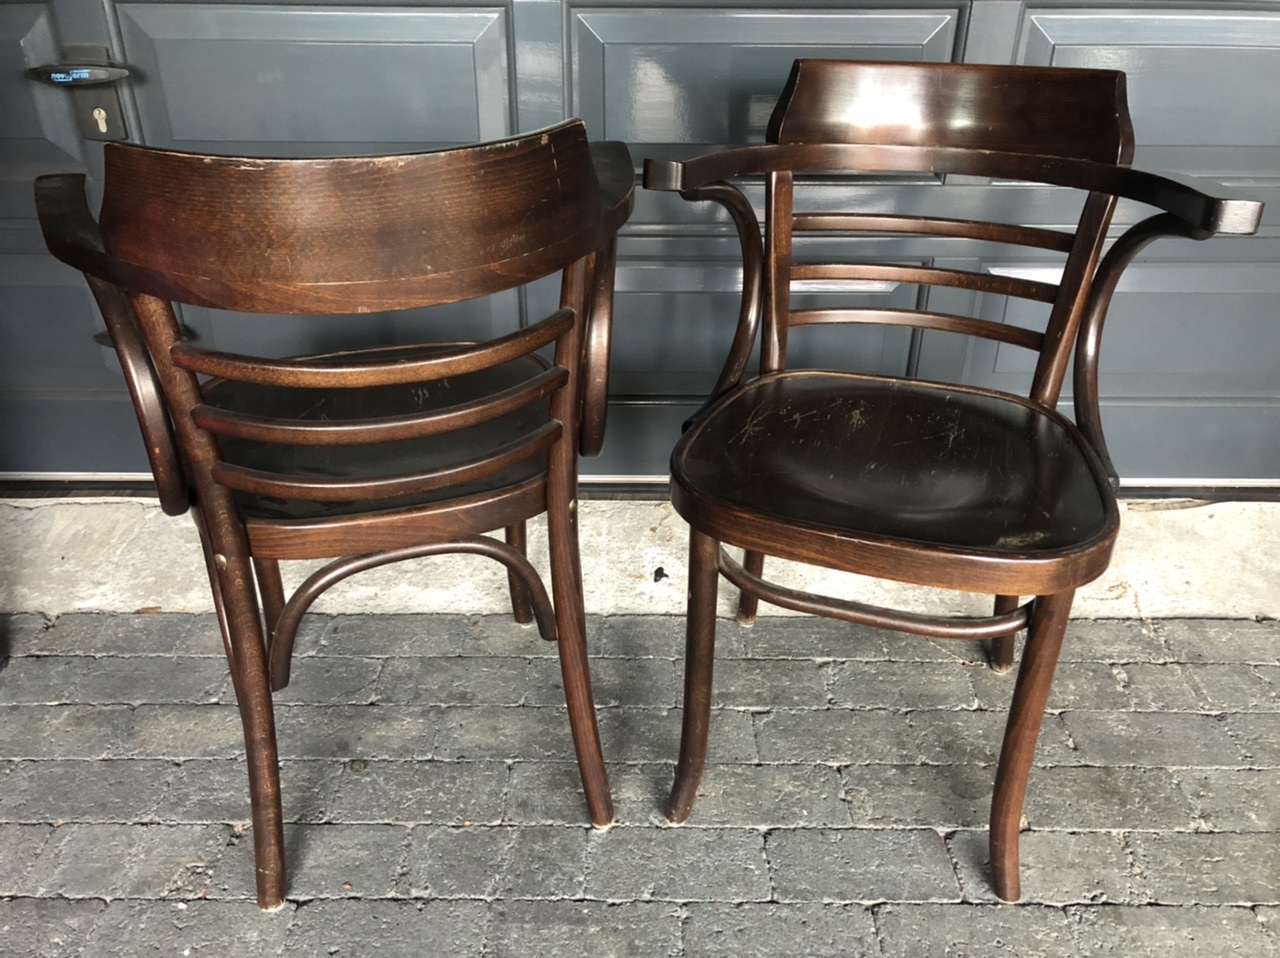 Staat Wrak Opblazen oud zeevruchten haar café stoelen te koop tweedehands rem zomer Senator